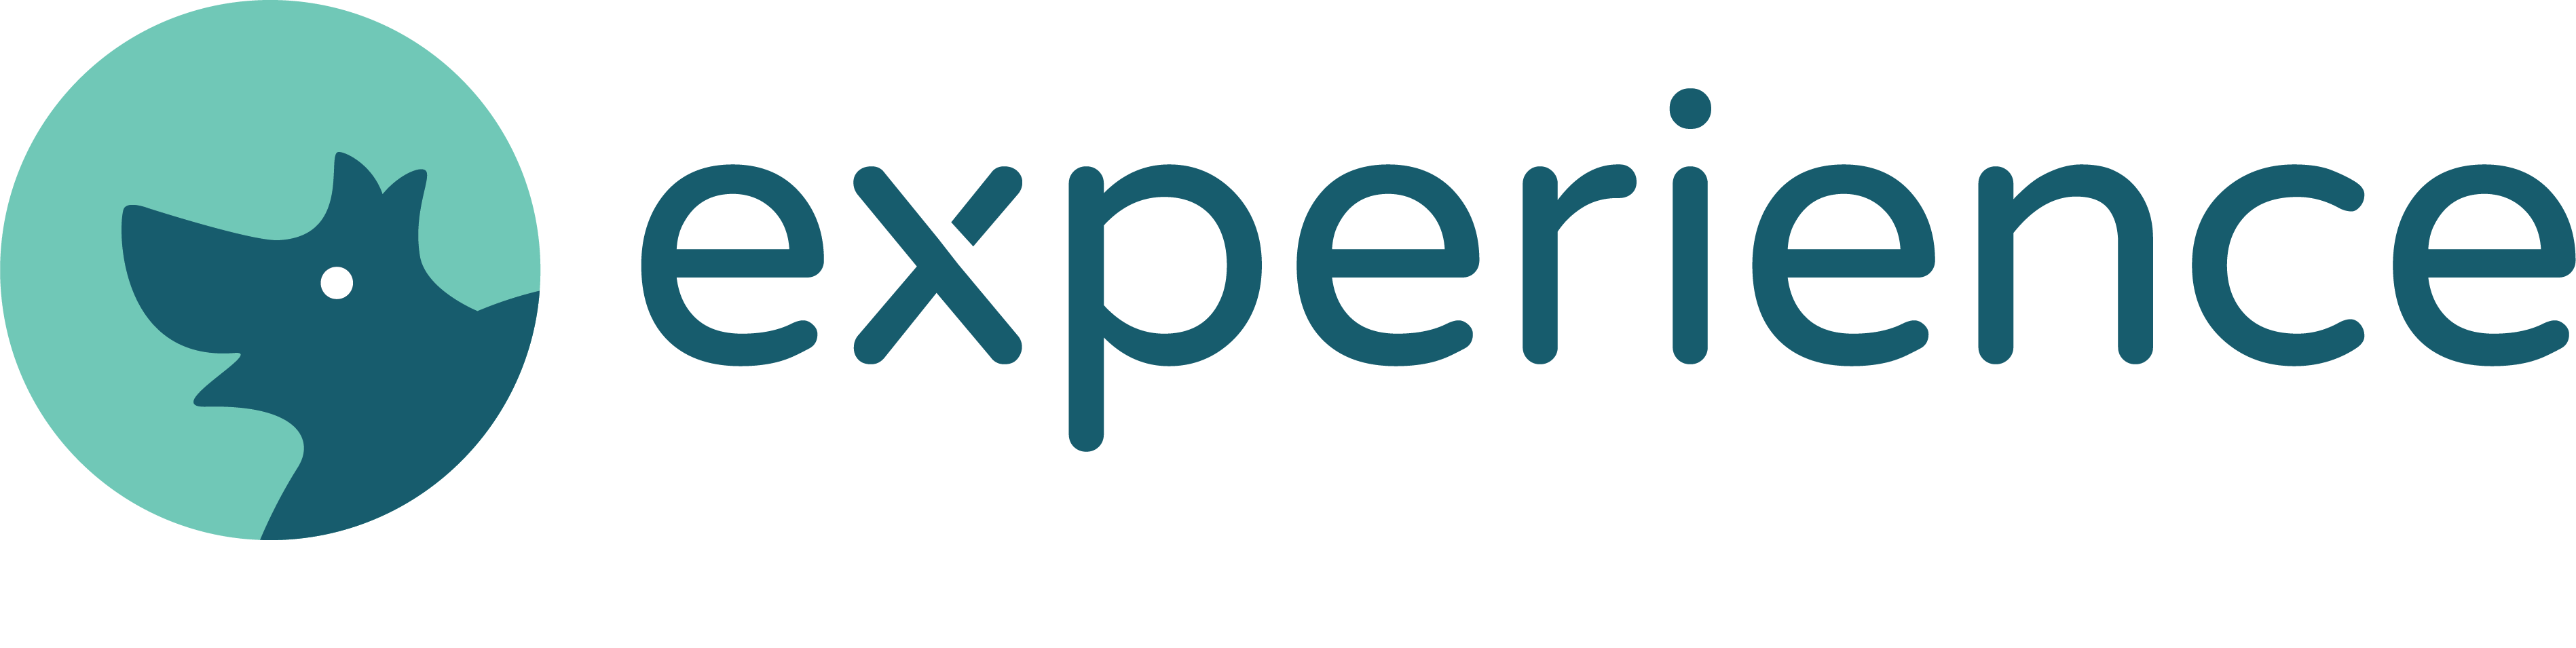 Experience LLC Company Logo